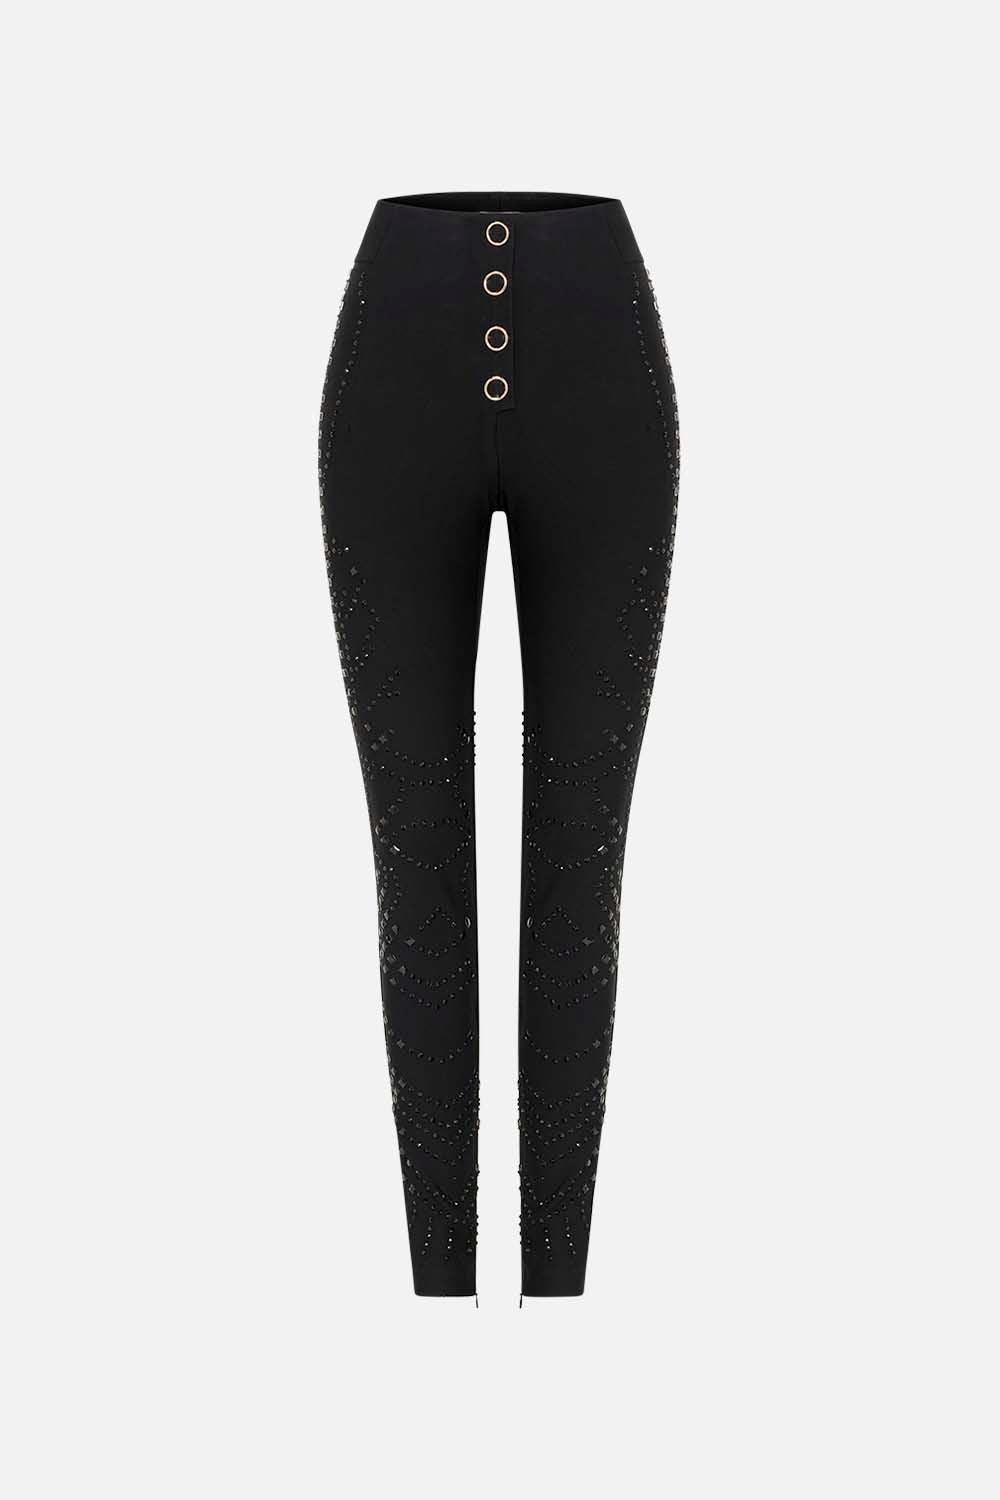 Camilla Snap Ponte Pant With Hotfix Nouveau Noir in Black